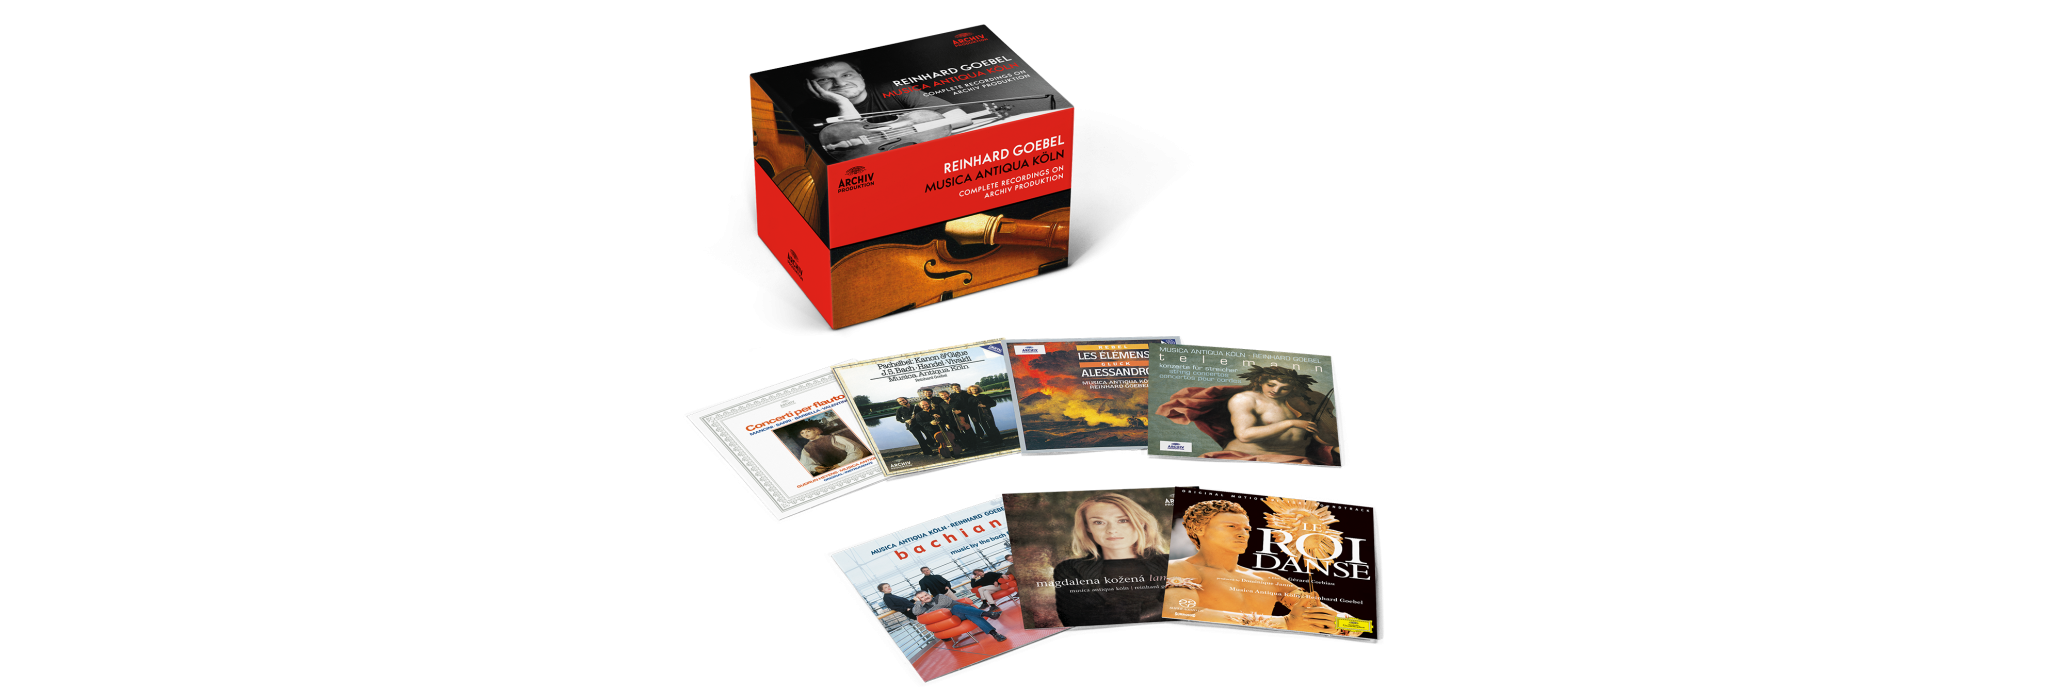 Reinhard Goebel - Complete Recordings on Archiv Produktion packshot banner